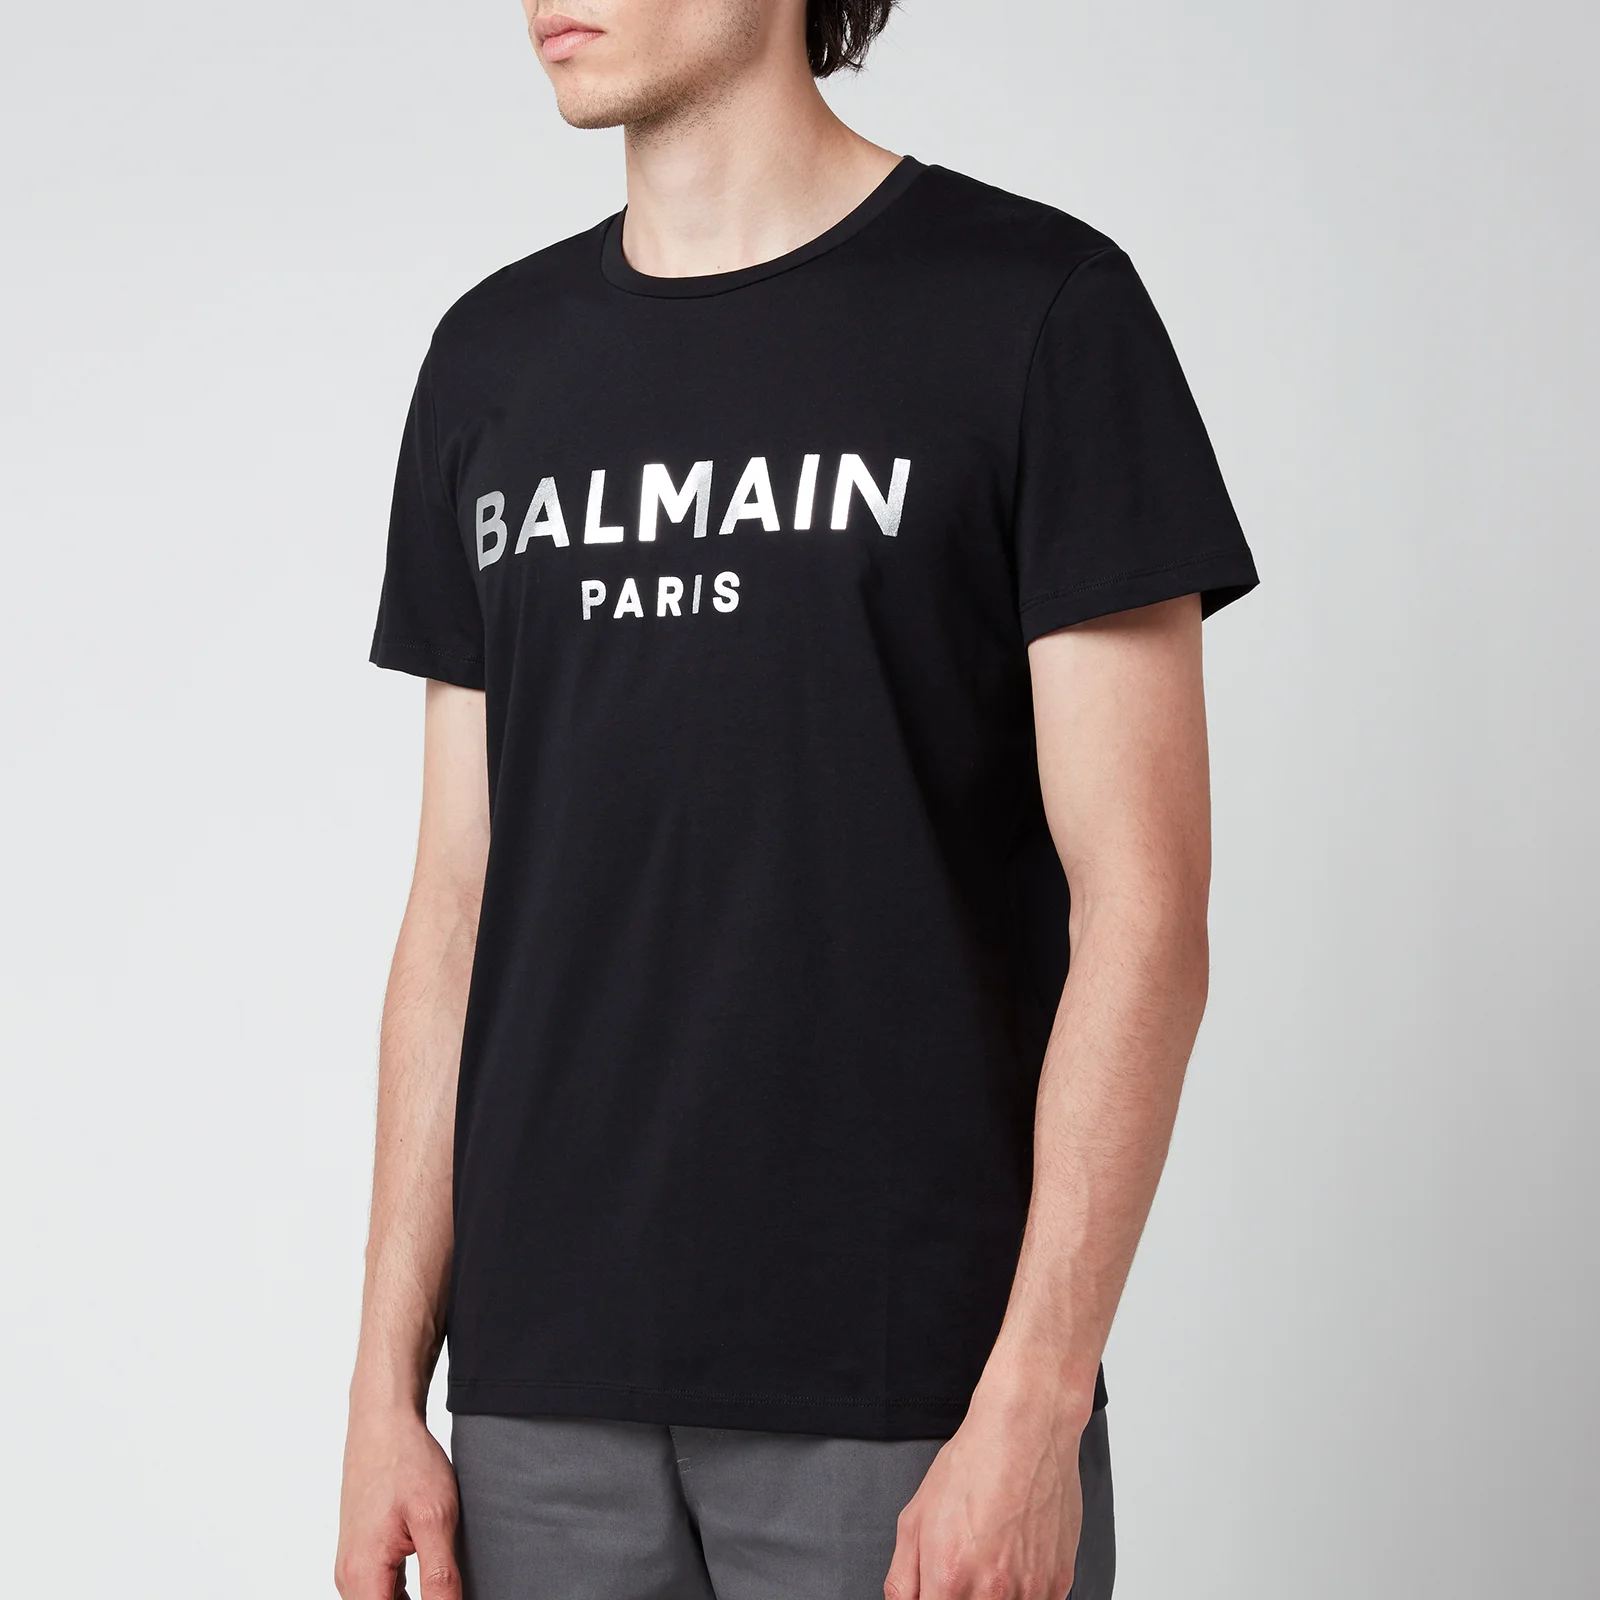 Balmain Men's Eco Sustainable Foil T-Shirt - Black/Silver Image 1